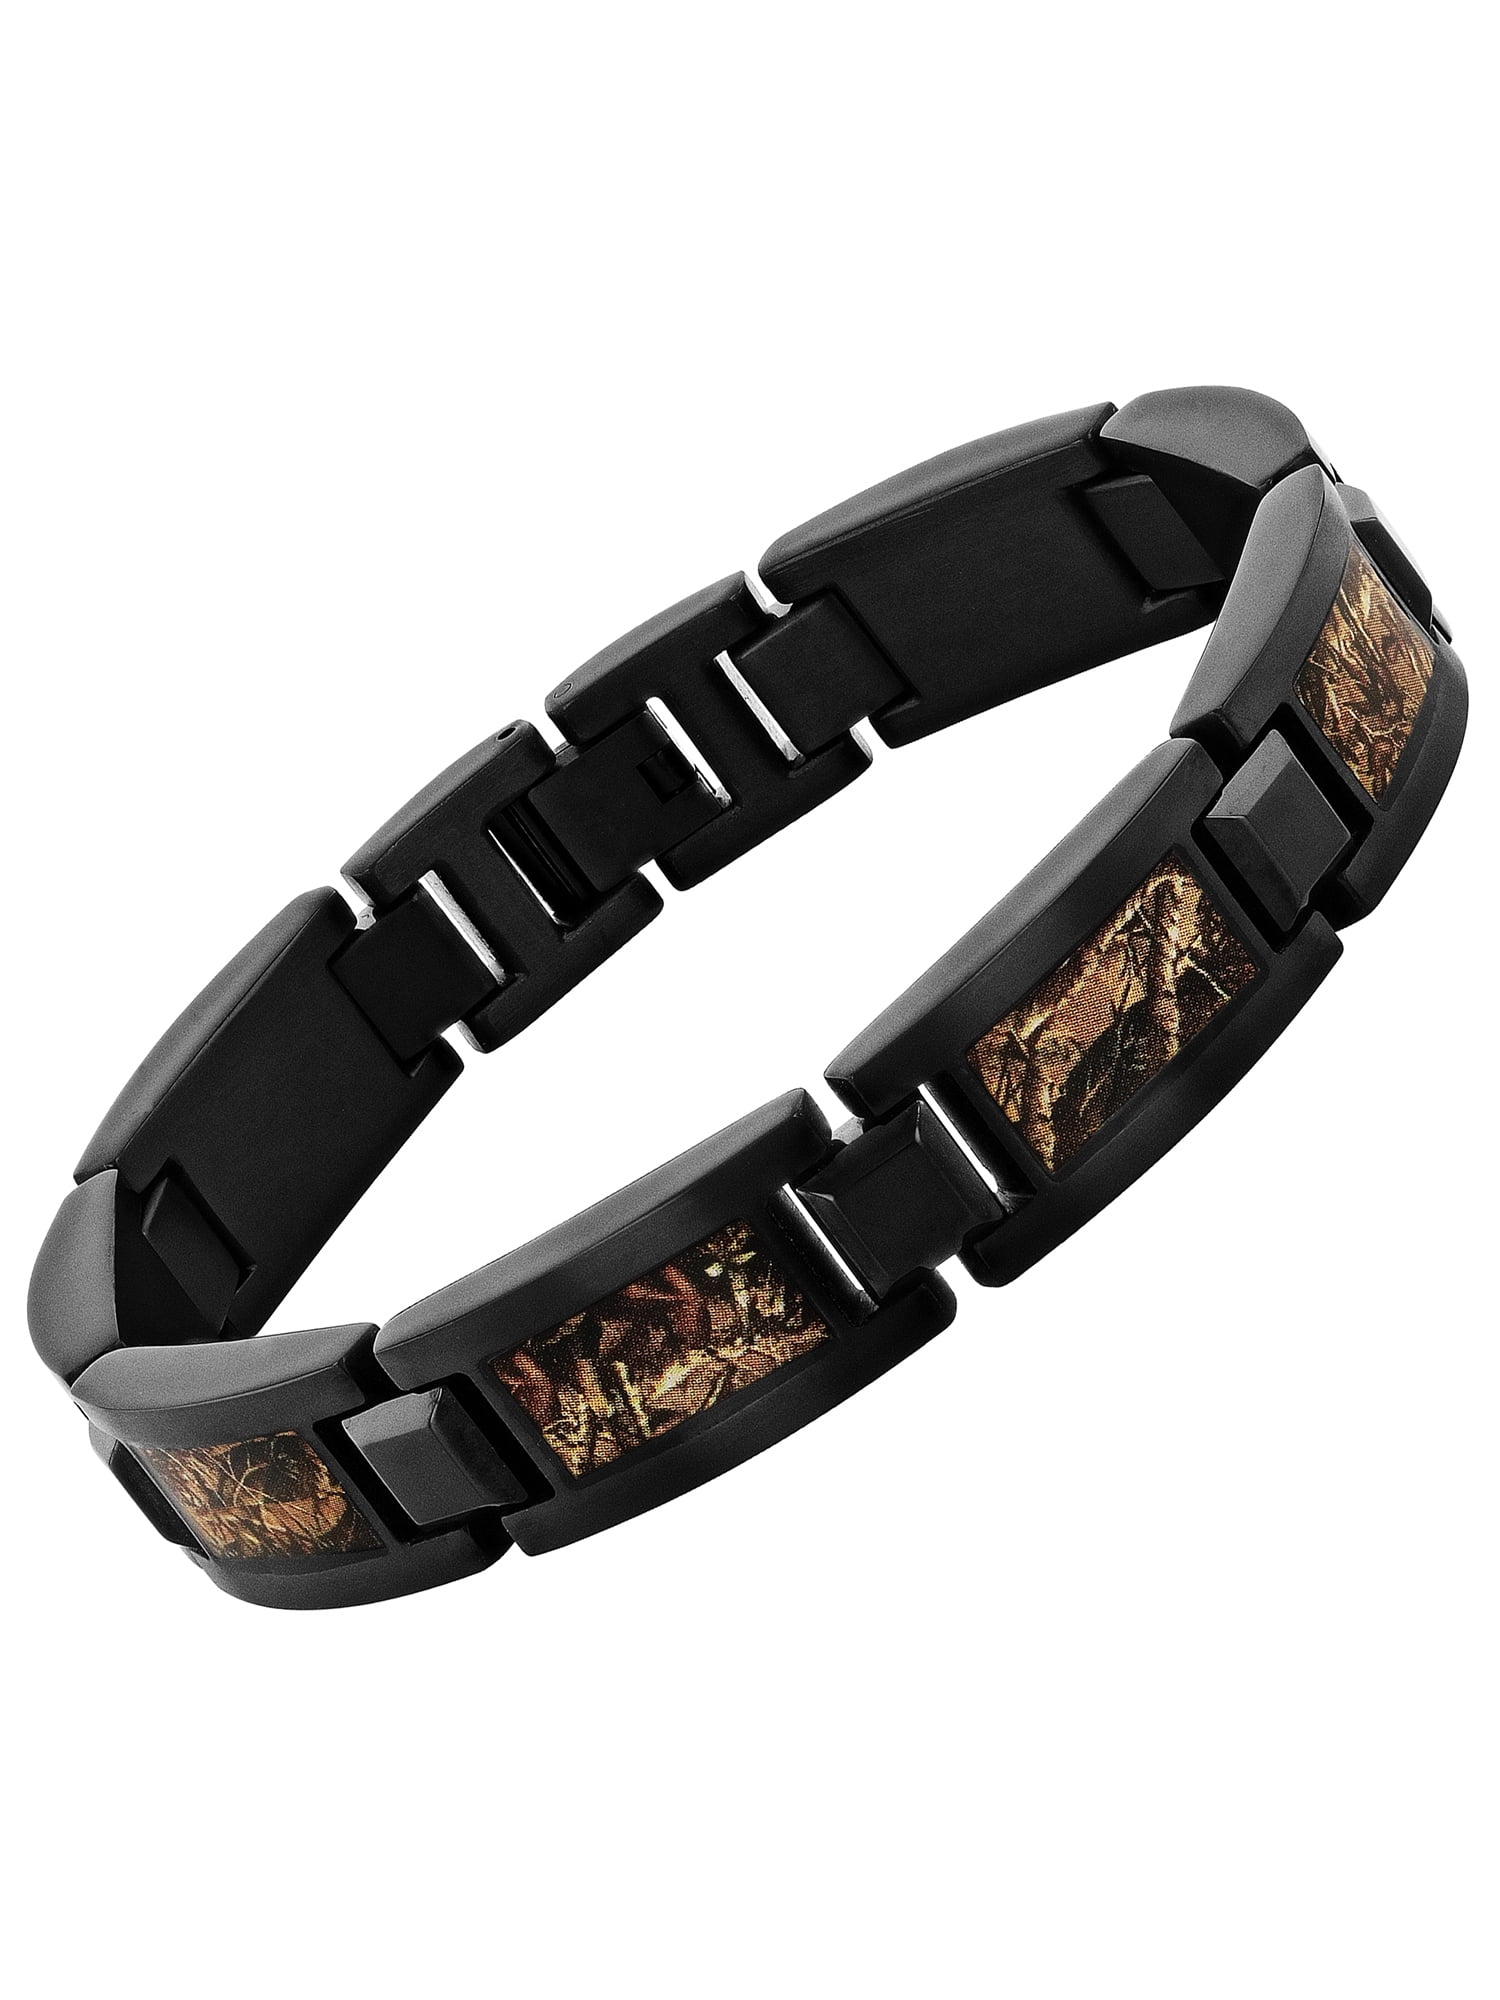 Camo Time Bracelet | Fashion bracelets to wear everyday | Risted